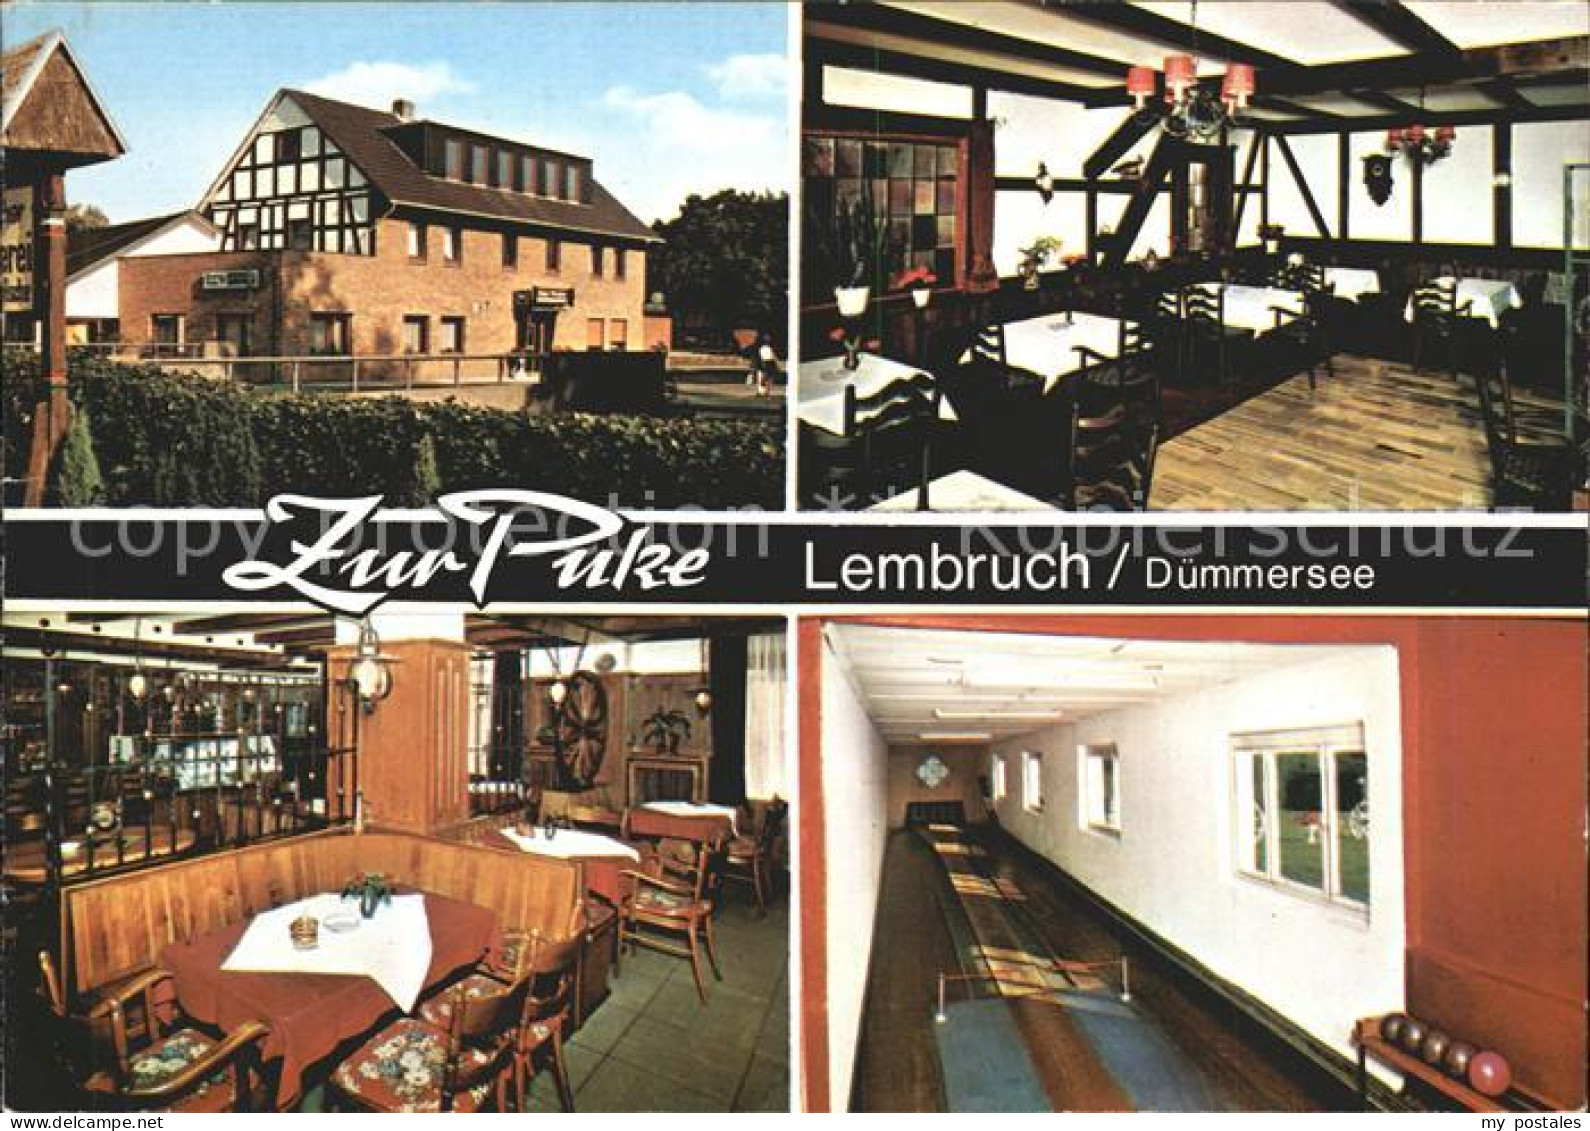 71950831 Lembruch Speiselokal Hotel Zur Puke Lembruch - Lembruch